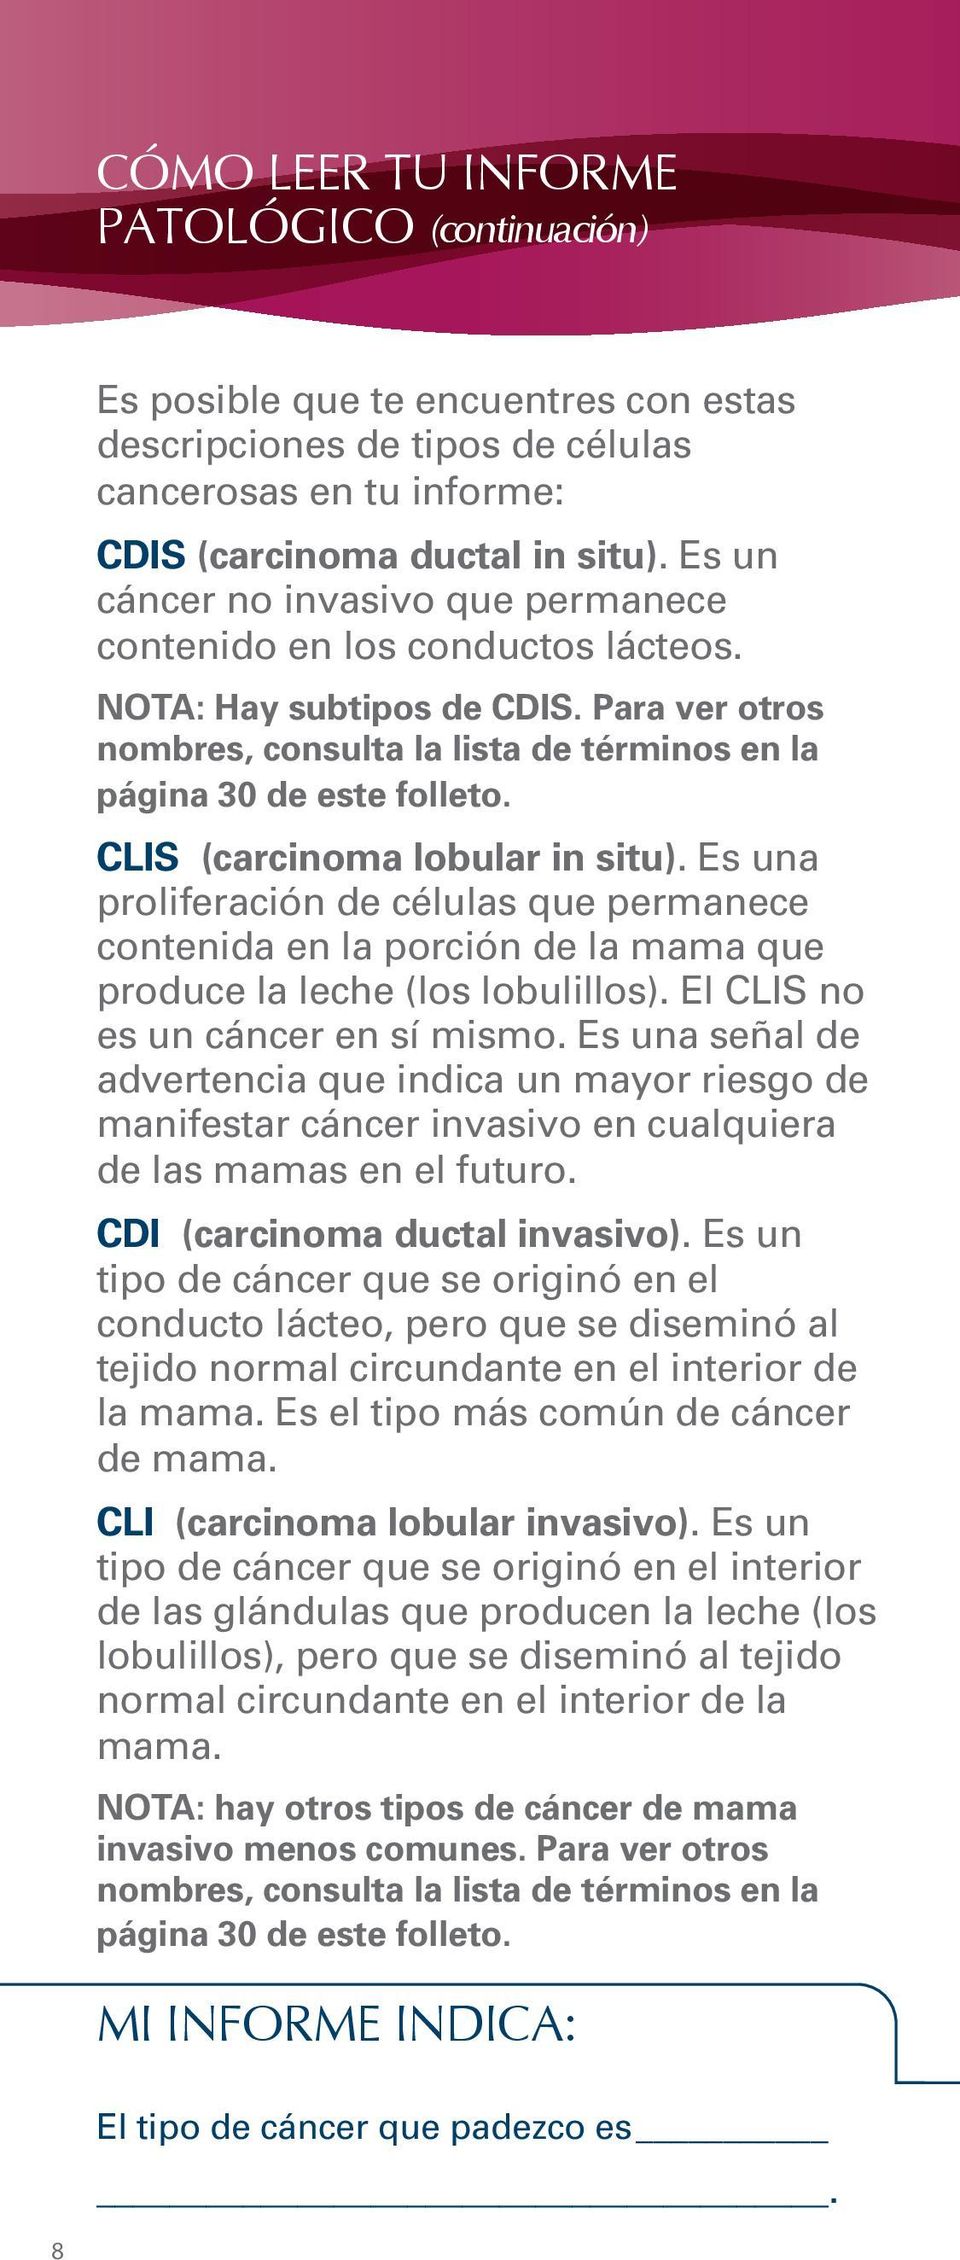 CLIS (carcinoma lobular in situ). Es una proliferación de células que permanece contenida en la porción de la mama que produce la leche (los lobulillos). El CLIS no es un cáncer en sí mismo.